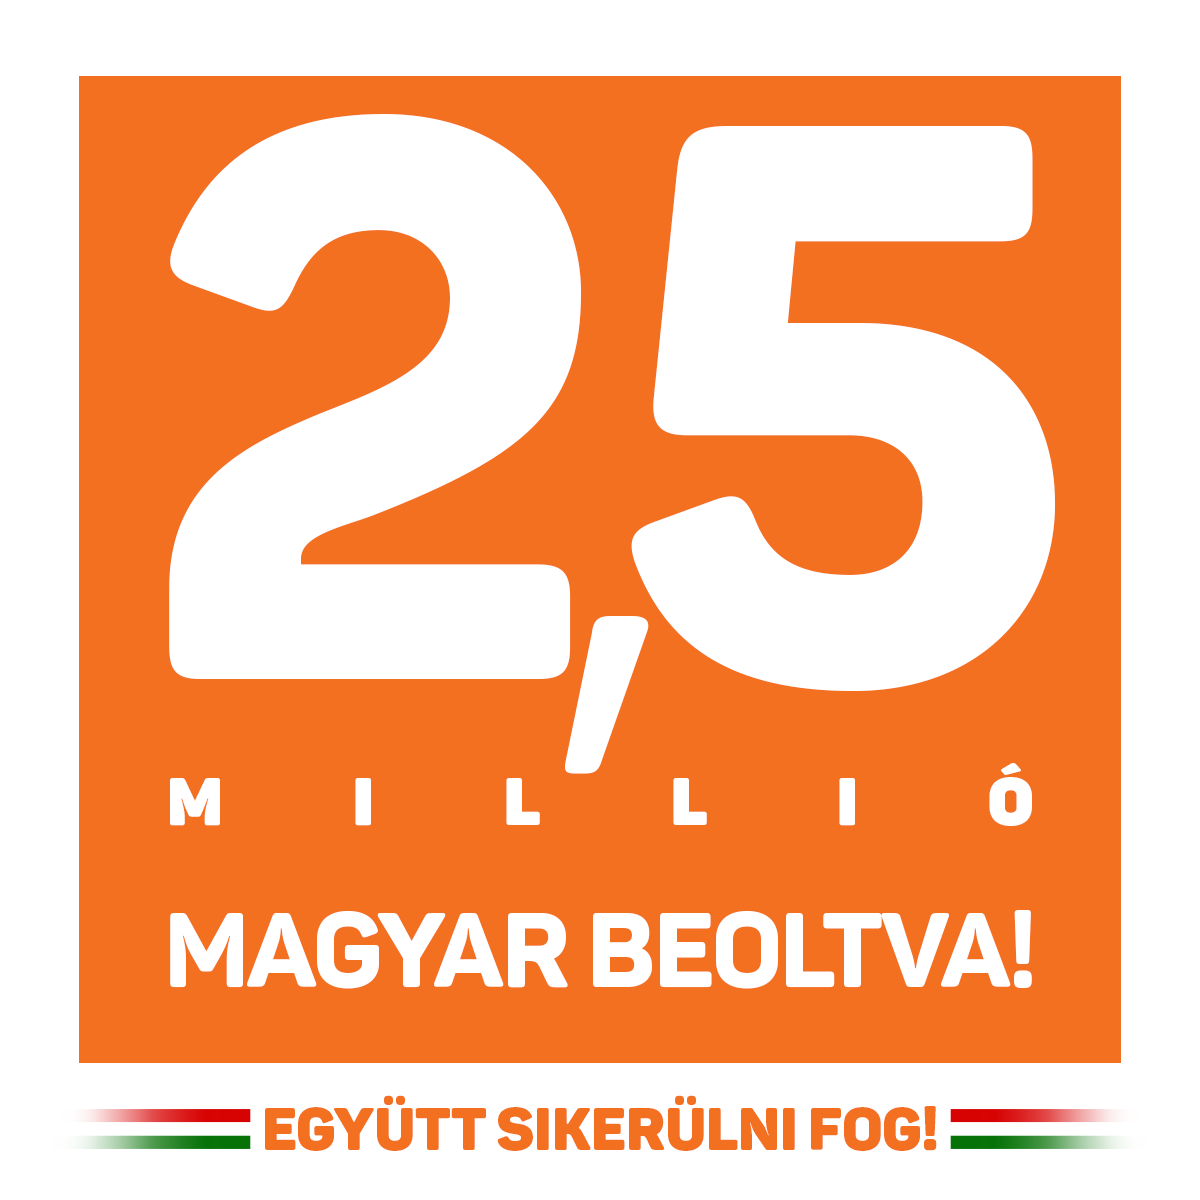 Orbán Viktor – A mai napon fontos mérföldkőhöz érkeztünk: 2,5 millió honfitársunk beoltva.